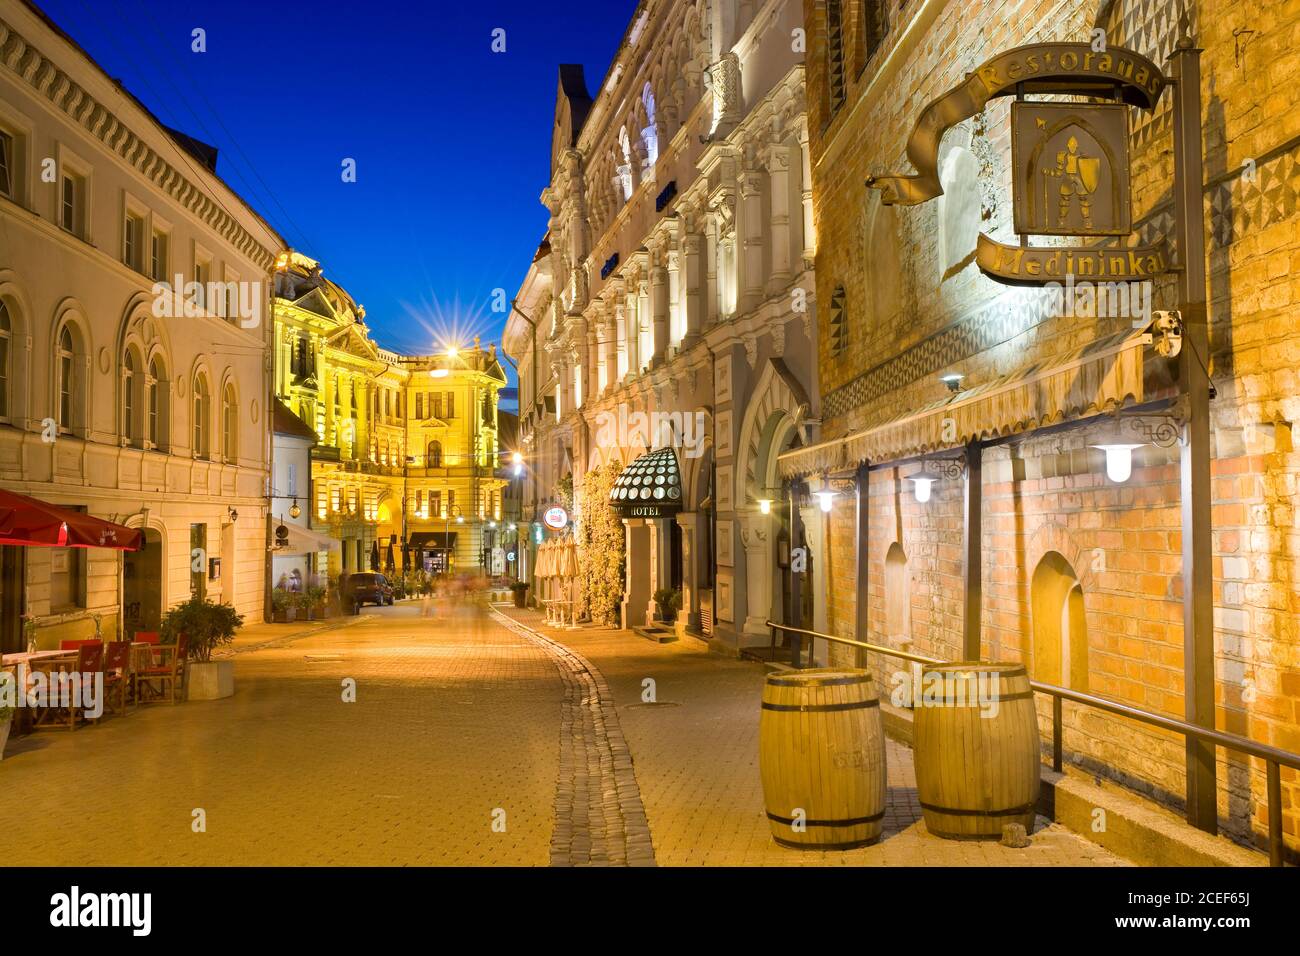 Nachtansicht der beleuchteten Ausros Vartu Straße in der Altstadt von Vilnius, Litauen. Medininkai Restaurant und Royale Hotel auf der rechten Seite. Litauisch N Stockfoto